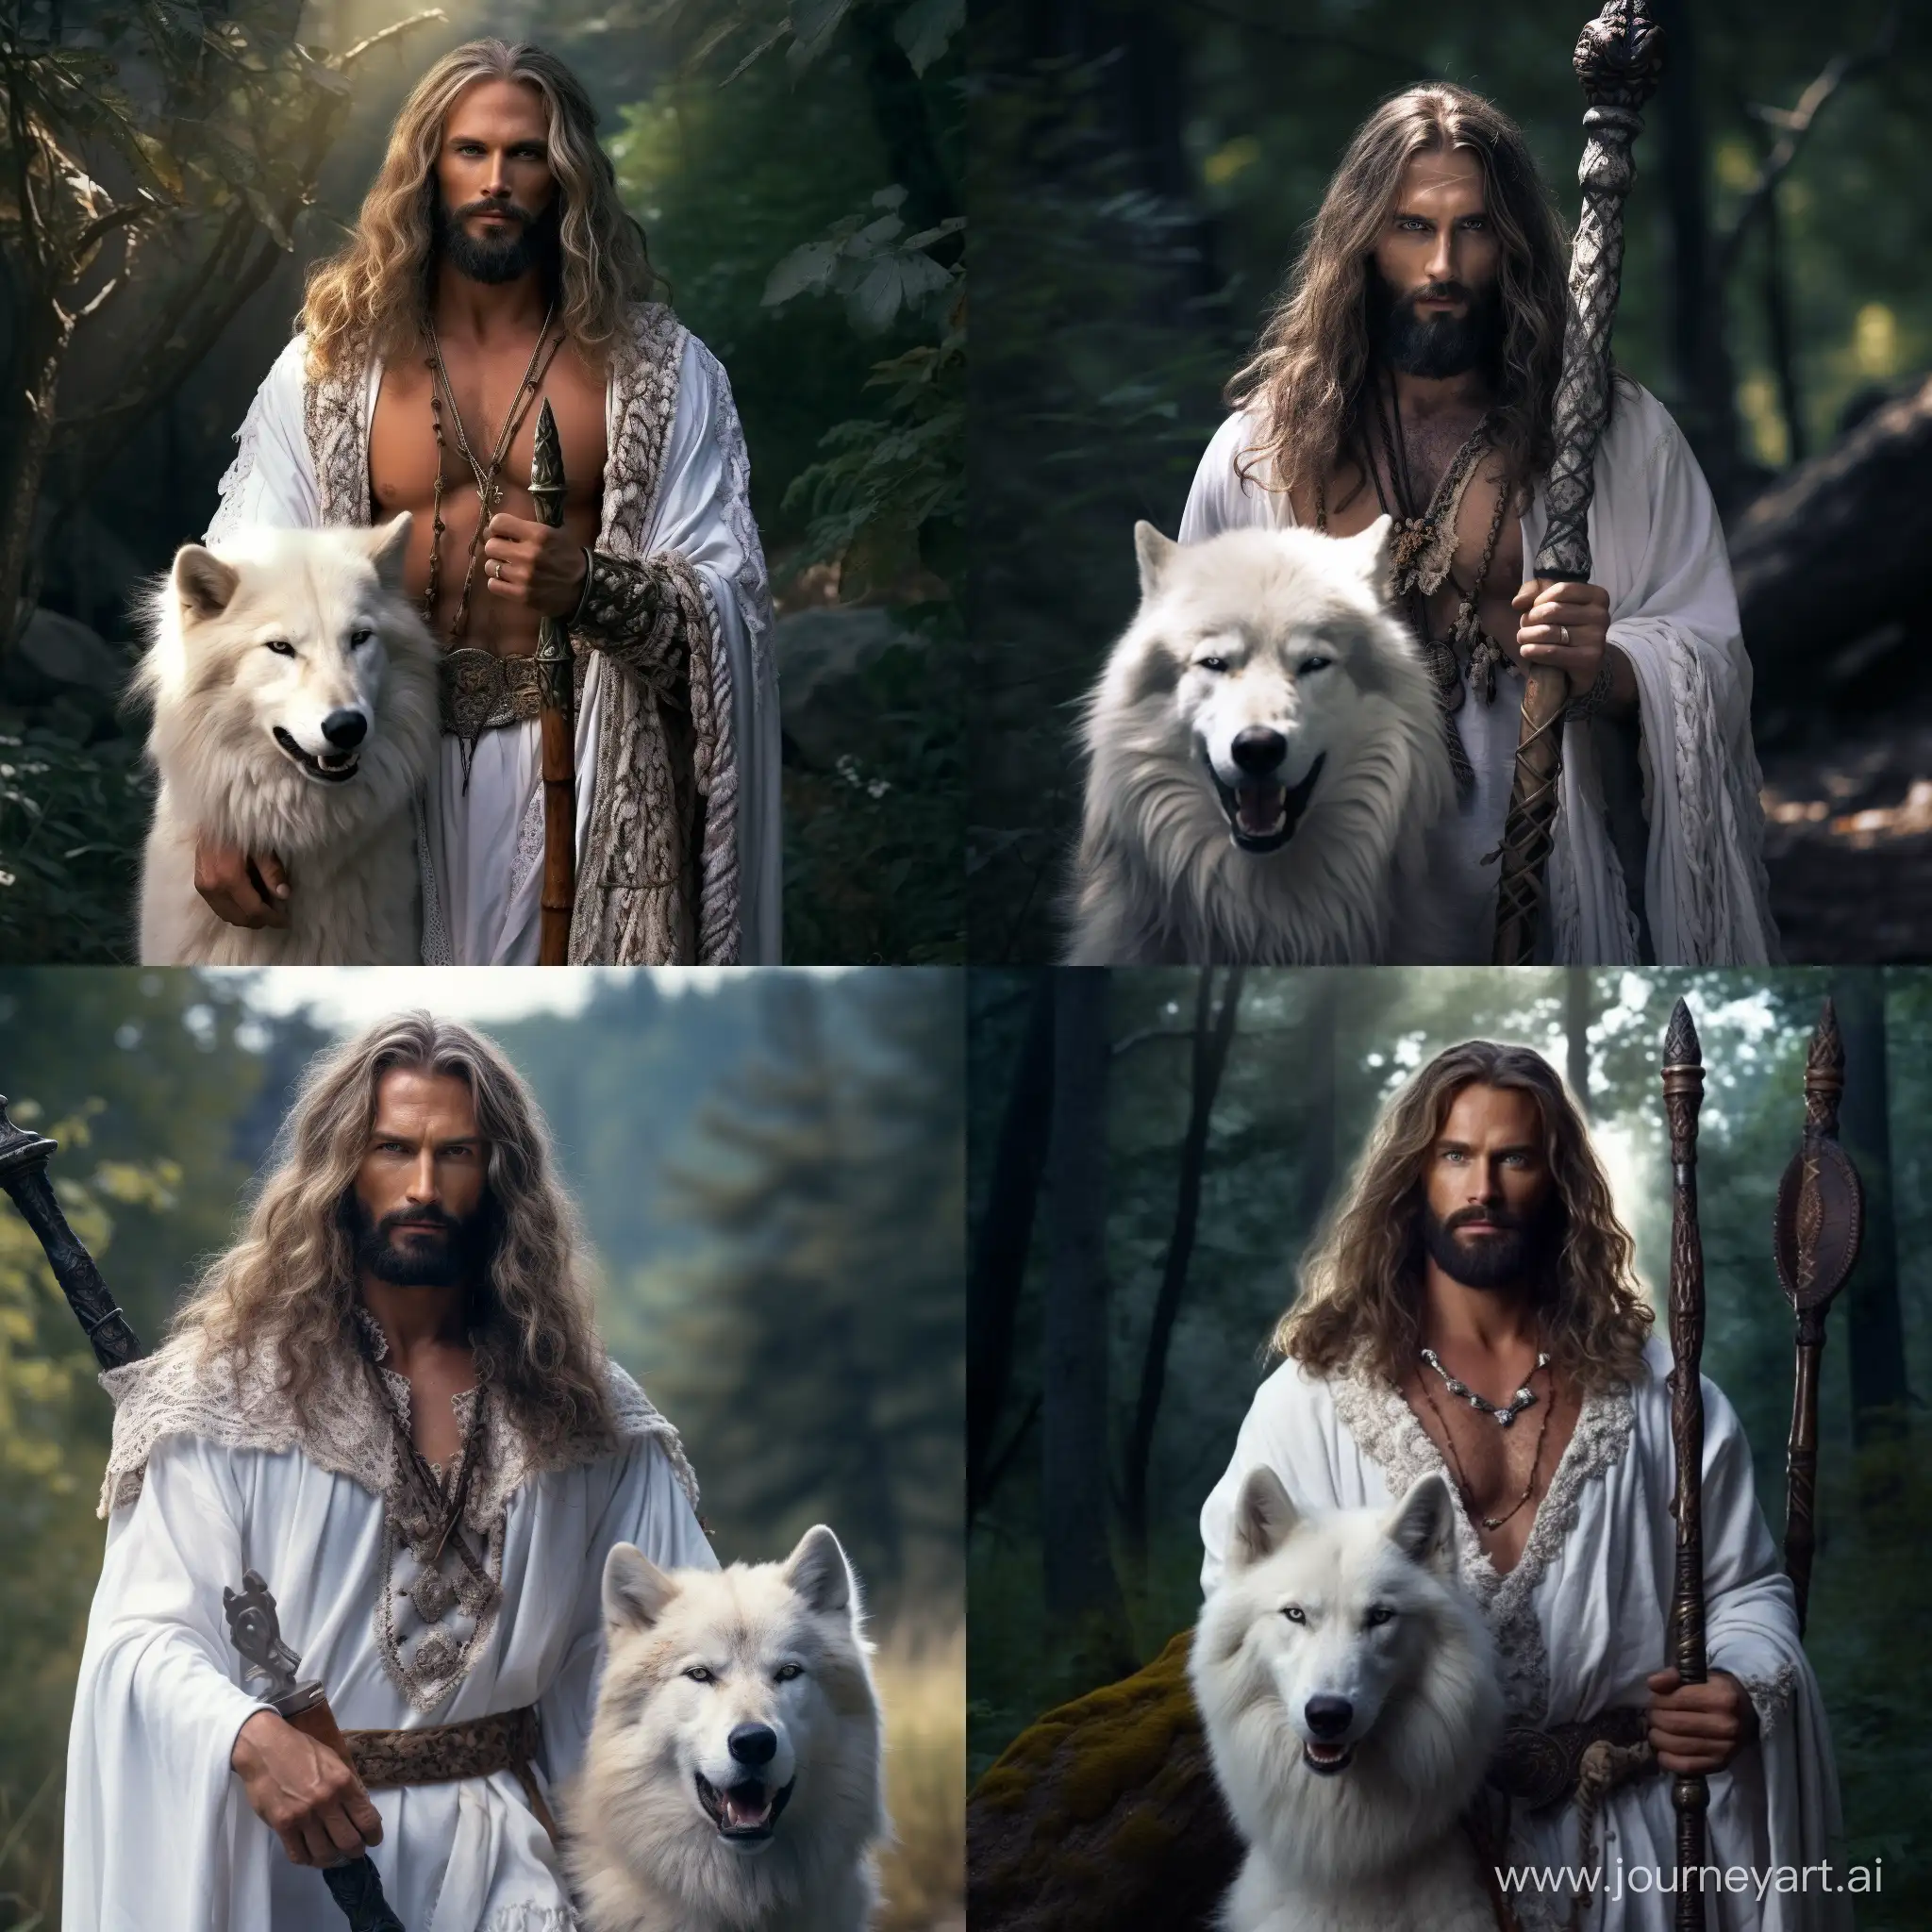 мужчина славянской внешности, очень длинная борода,длинные волосы,глаза тёмно-голубого цвета,в руке держит посох с головой волка,одет в белую одежду, необычнве украшения на рукавах,на заднем фоне летняя природа,реалистично, 4K